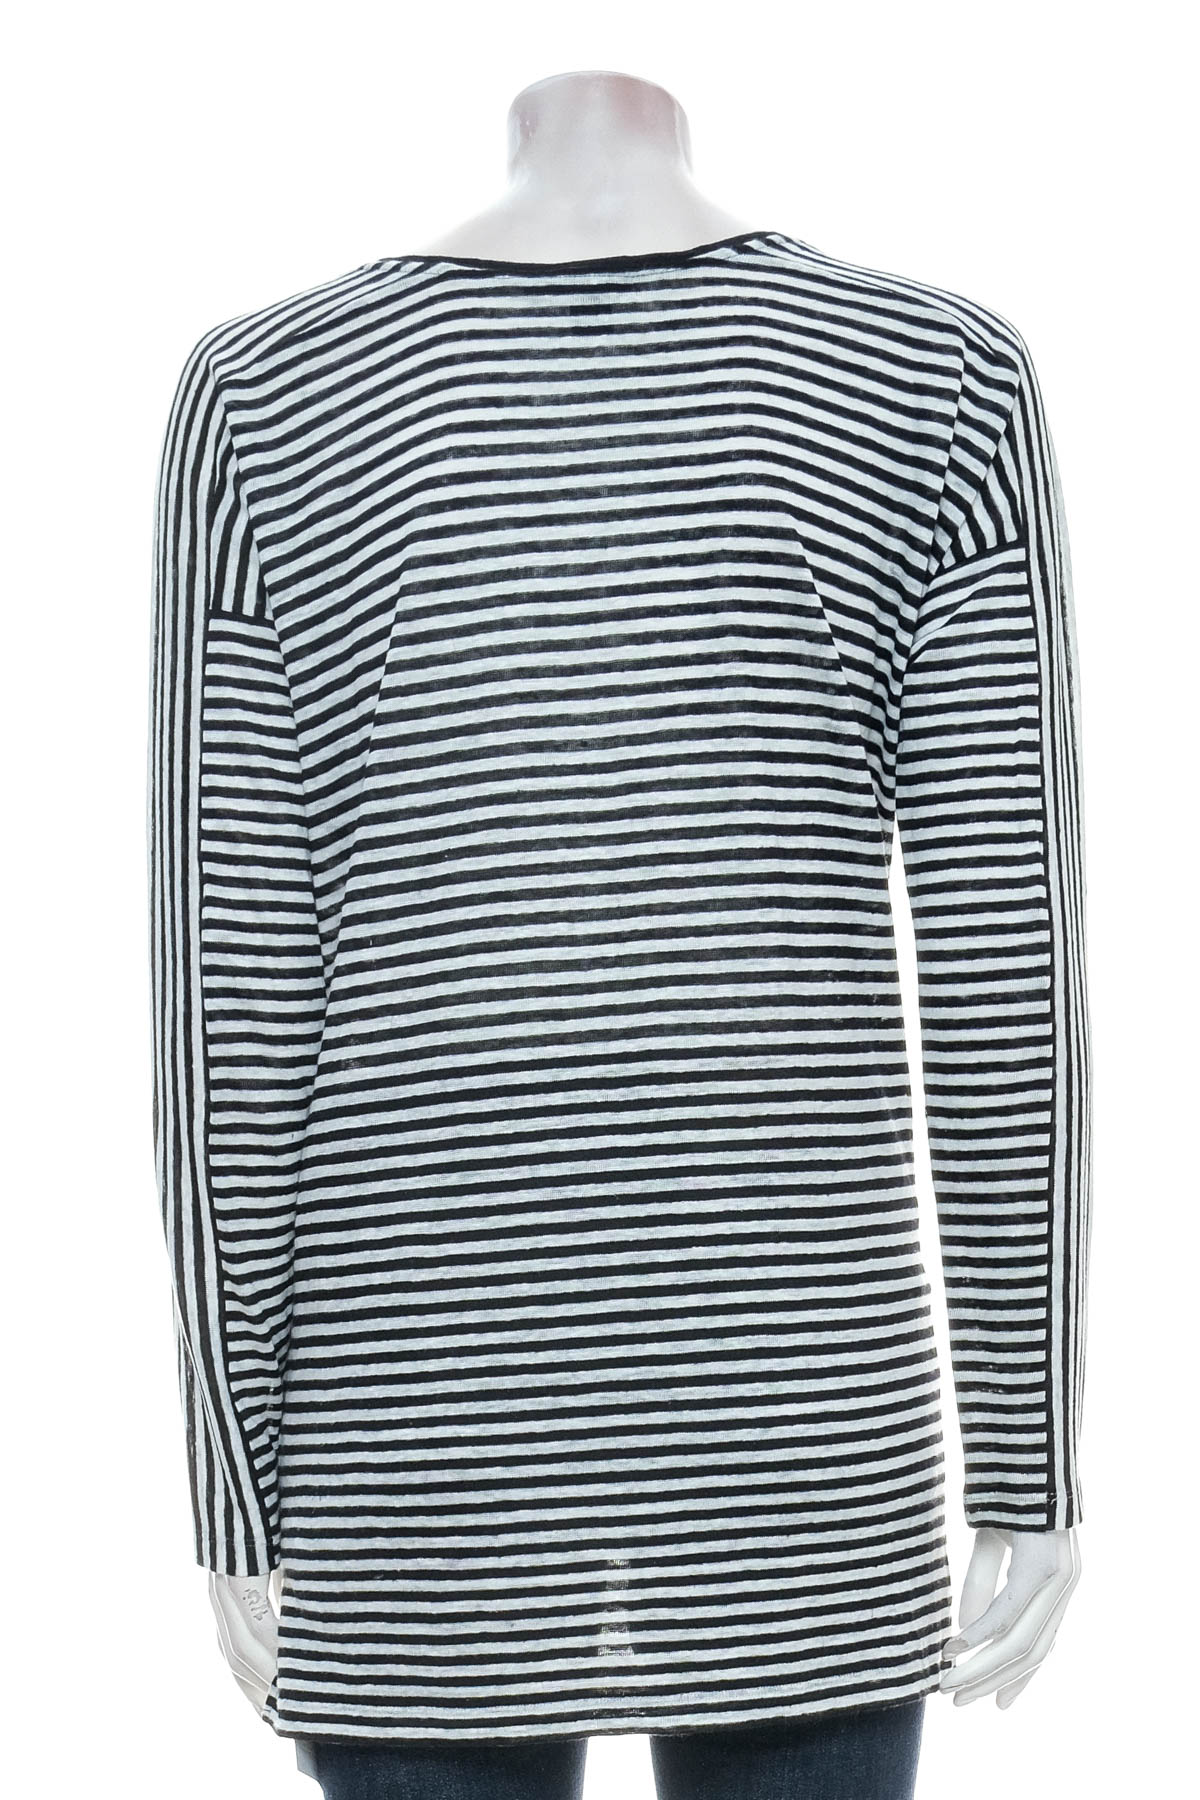 Women's sweater - DKNY - 1